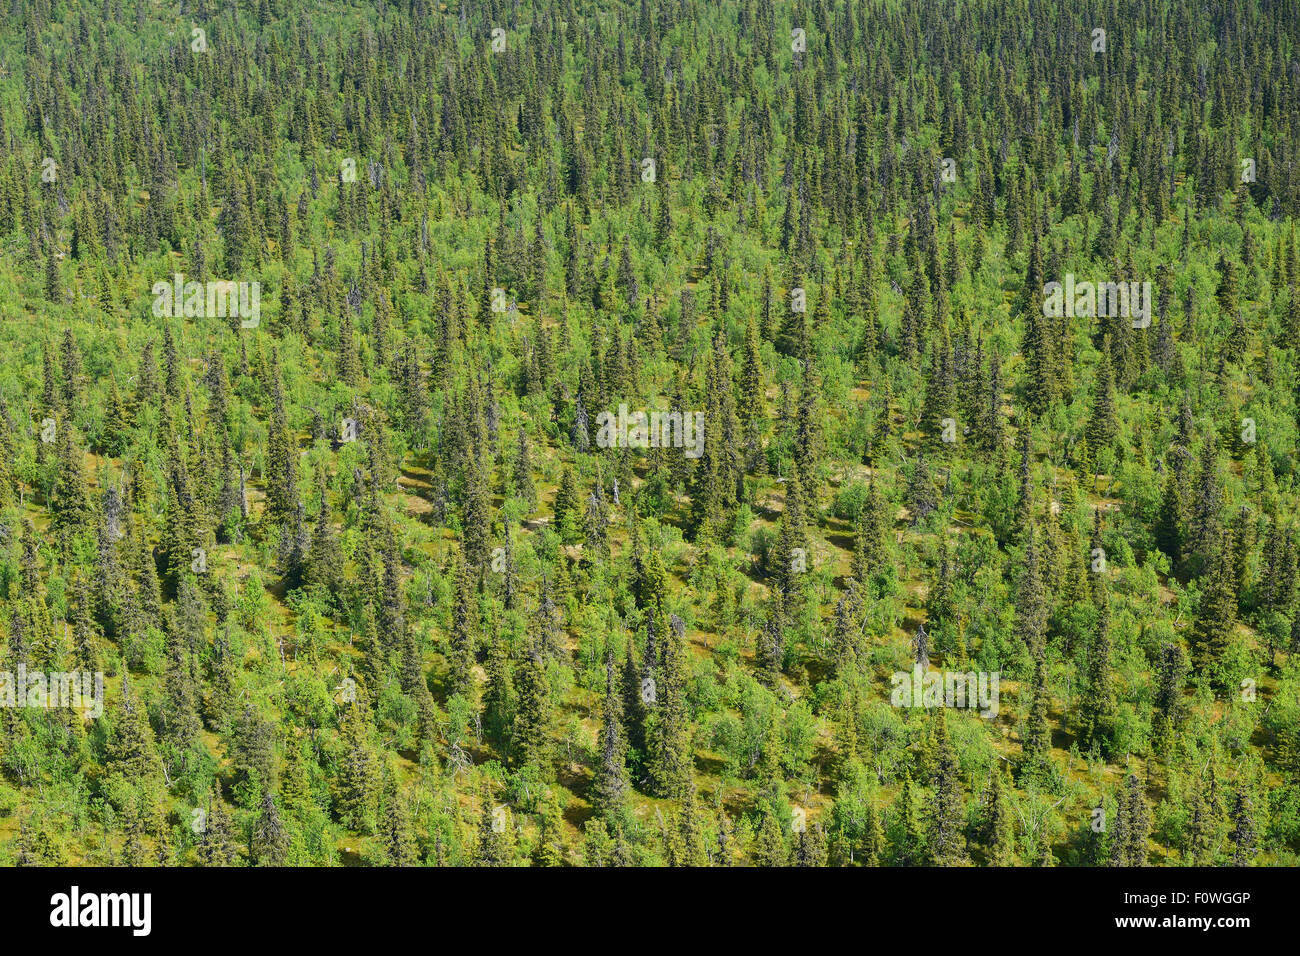 Vista aerea della taiga foresta boreale, Sjaunja Bird Area di protezione superiore Laponia Area Rewilding, Lapponia, Norrbotten, Svezia, giugno 2013. Foto Stock